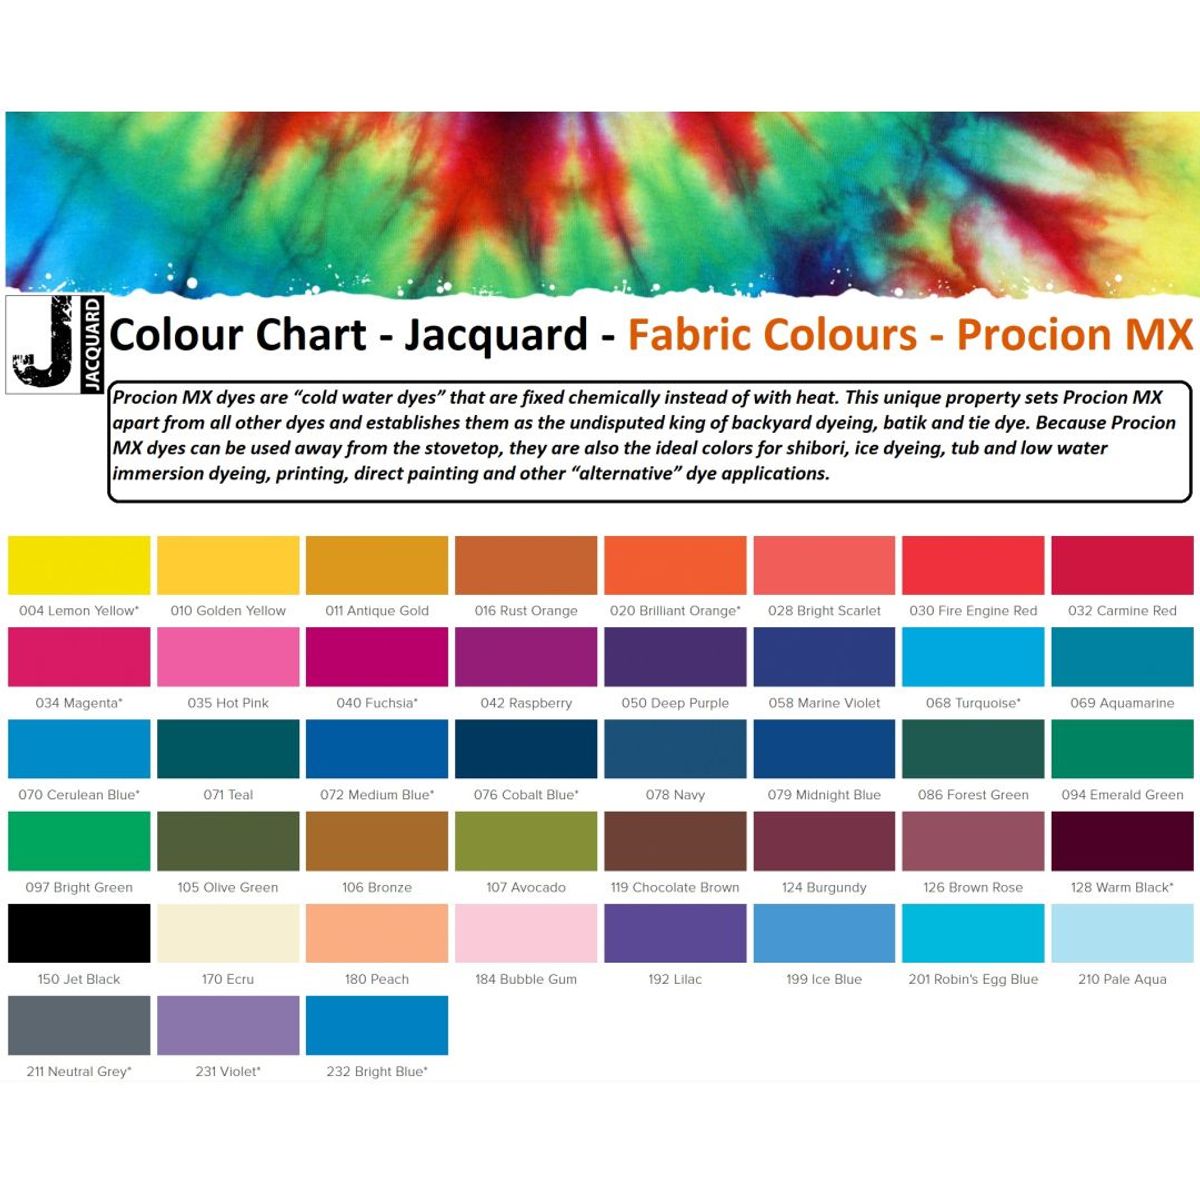 Jacquard - Procion MX Dye - Stoff Textil - Avocado 107